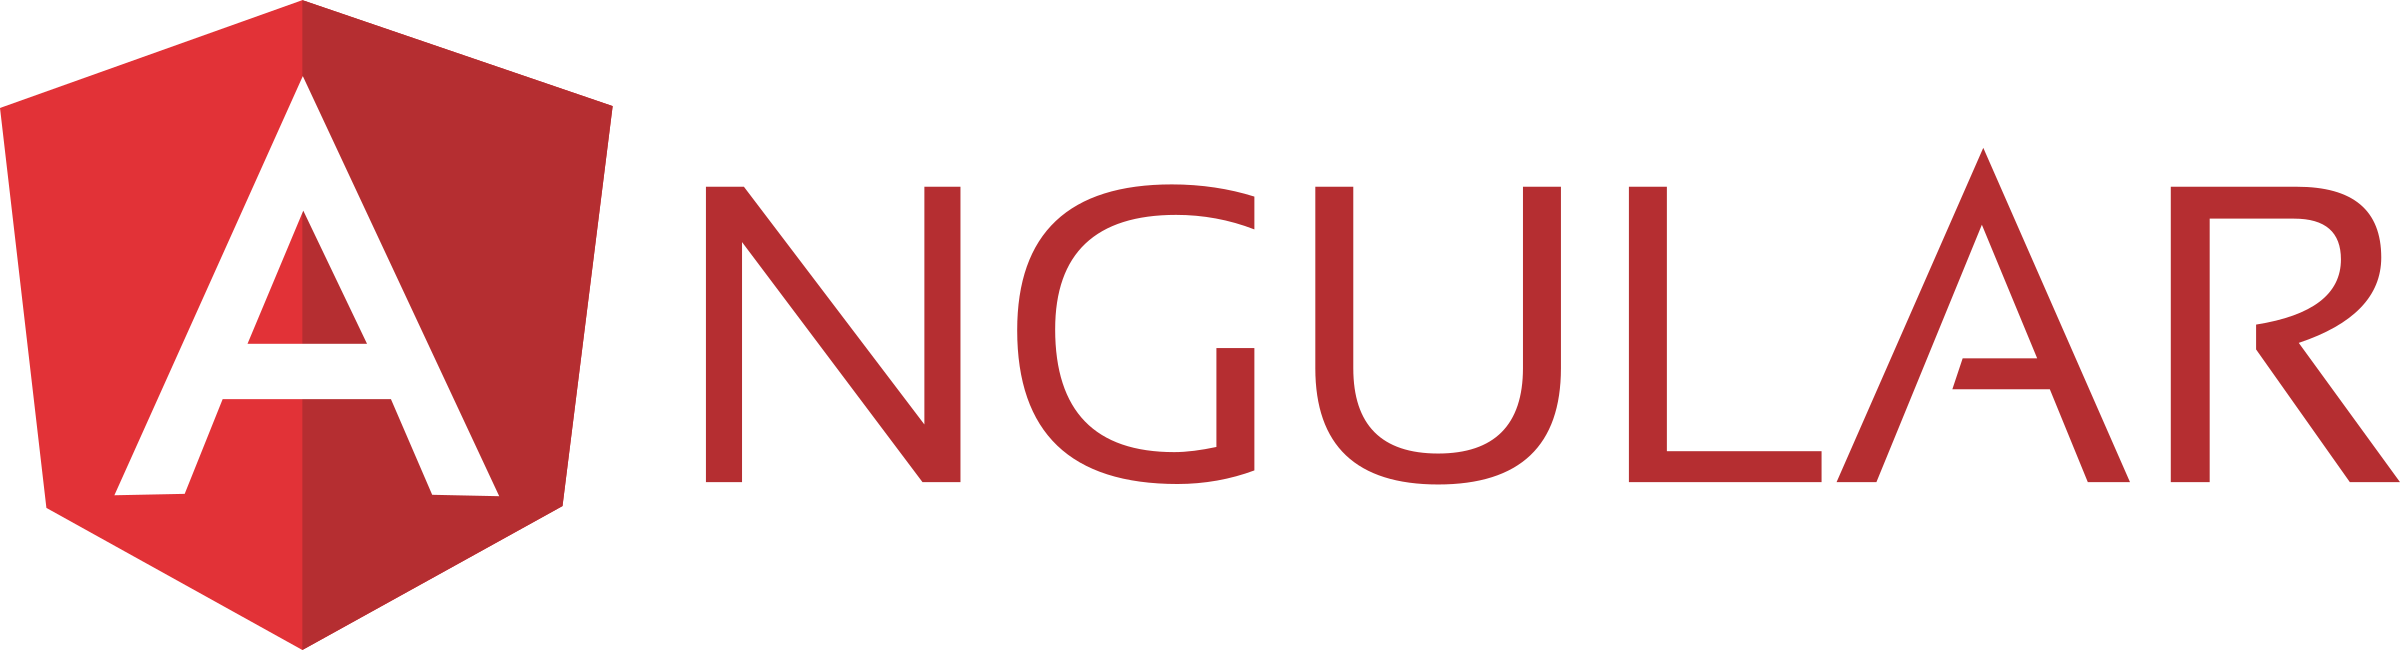 angular-3-logo-png-transparent